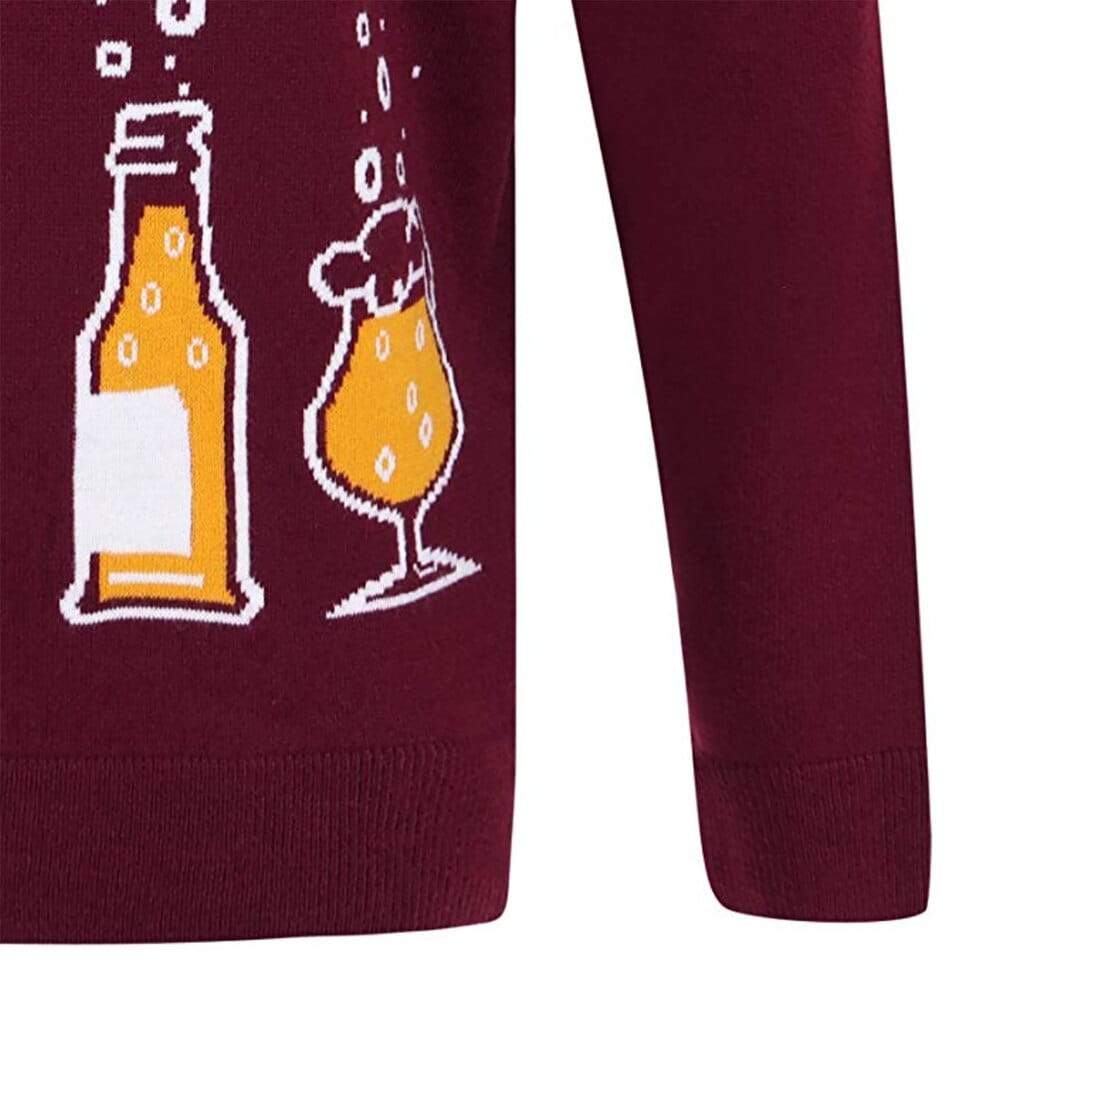 Mr Crimbo Mens Happy New Beer Slogan Knit Christmas Jumper - MrCrimbo.co.uk -SRG1A13460_A - Oxblood Red -beer jumper